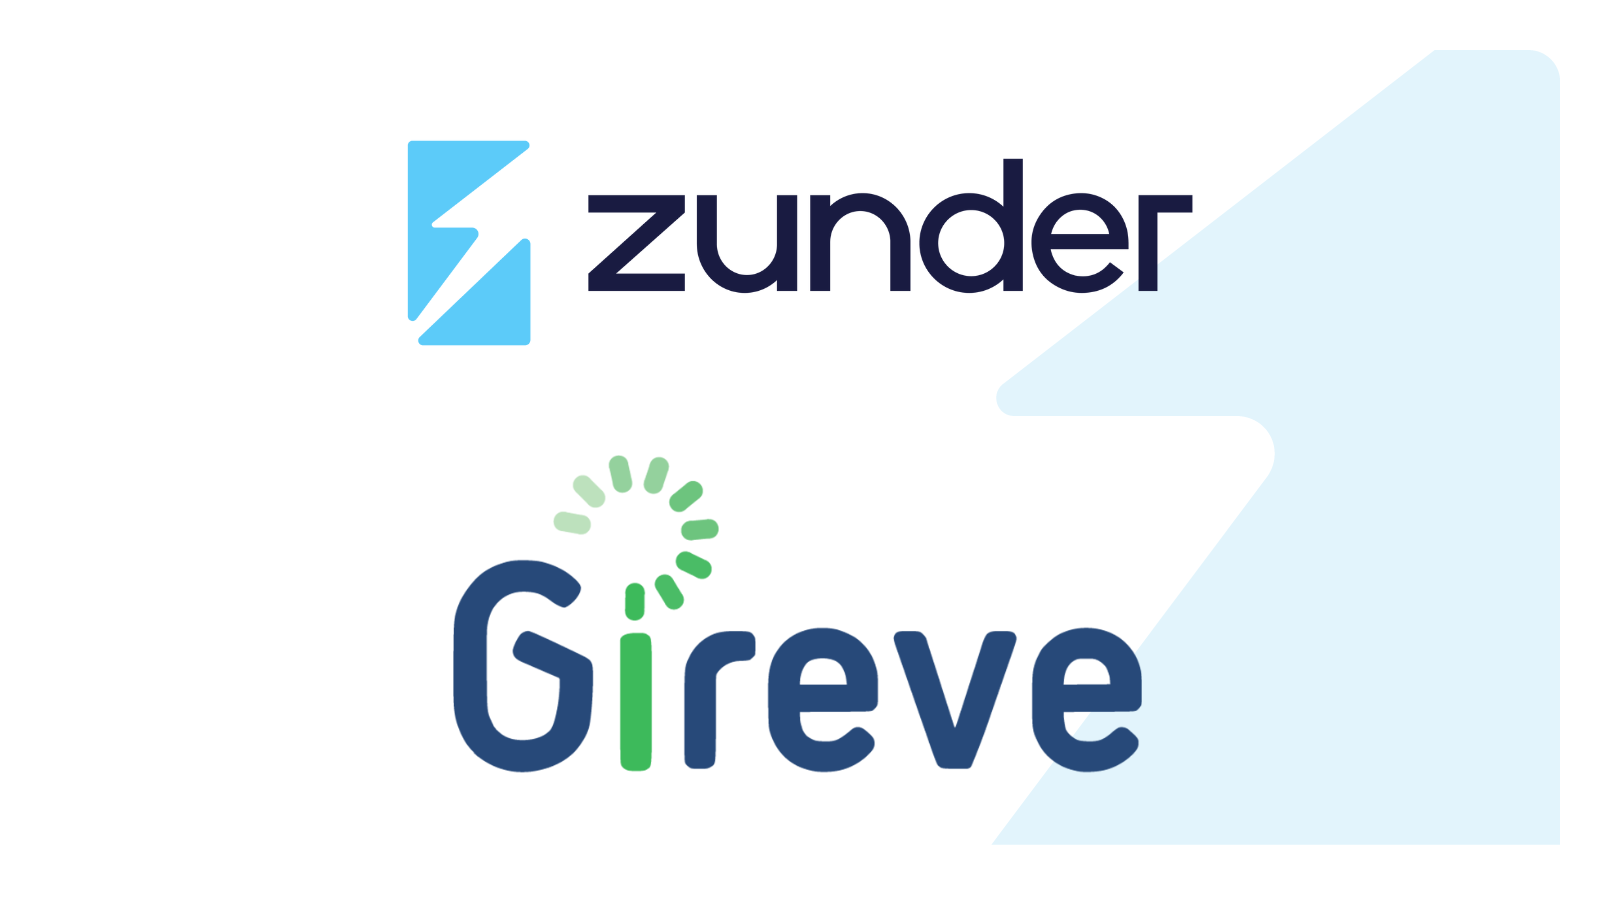 Zunder pone en funcionamiento su interoperabilidad con Gireve